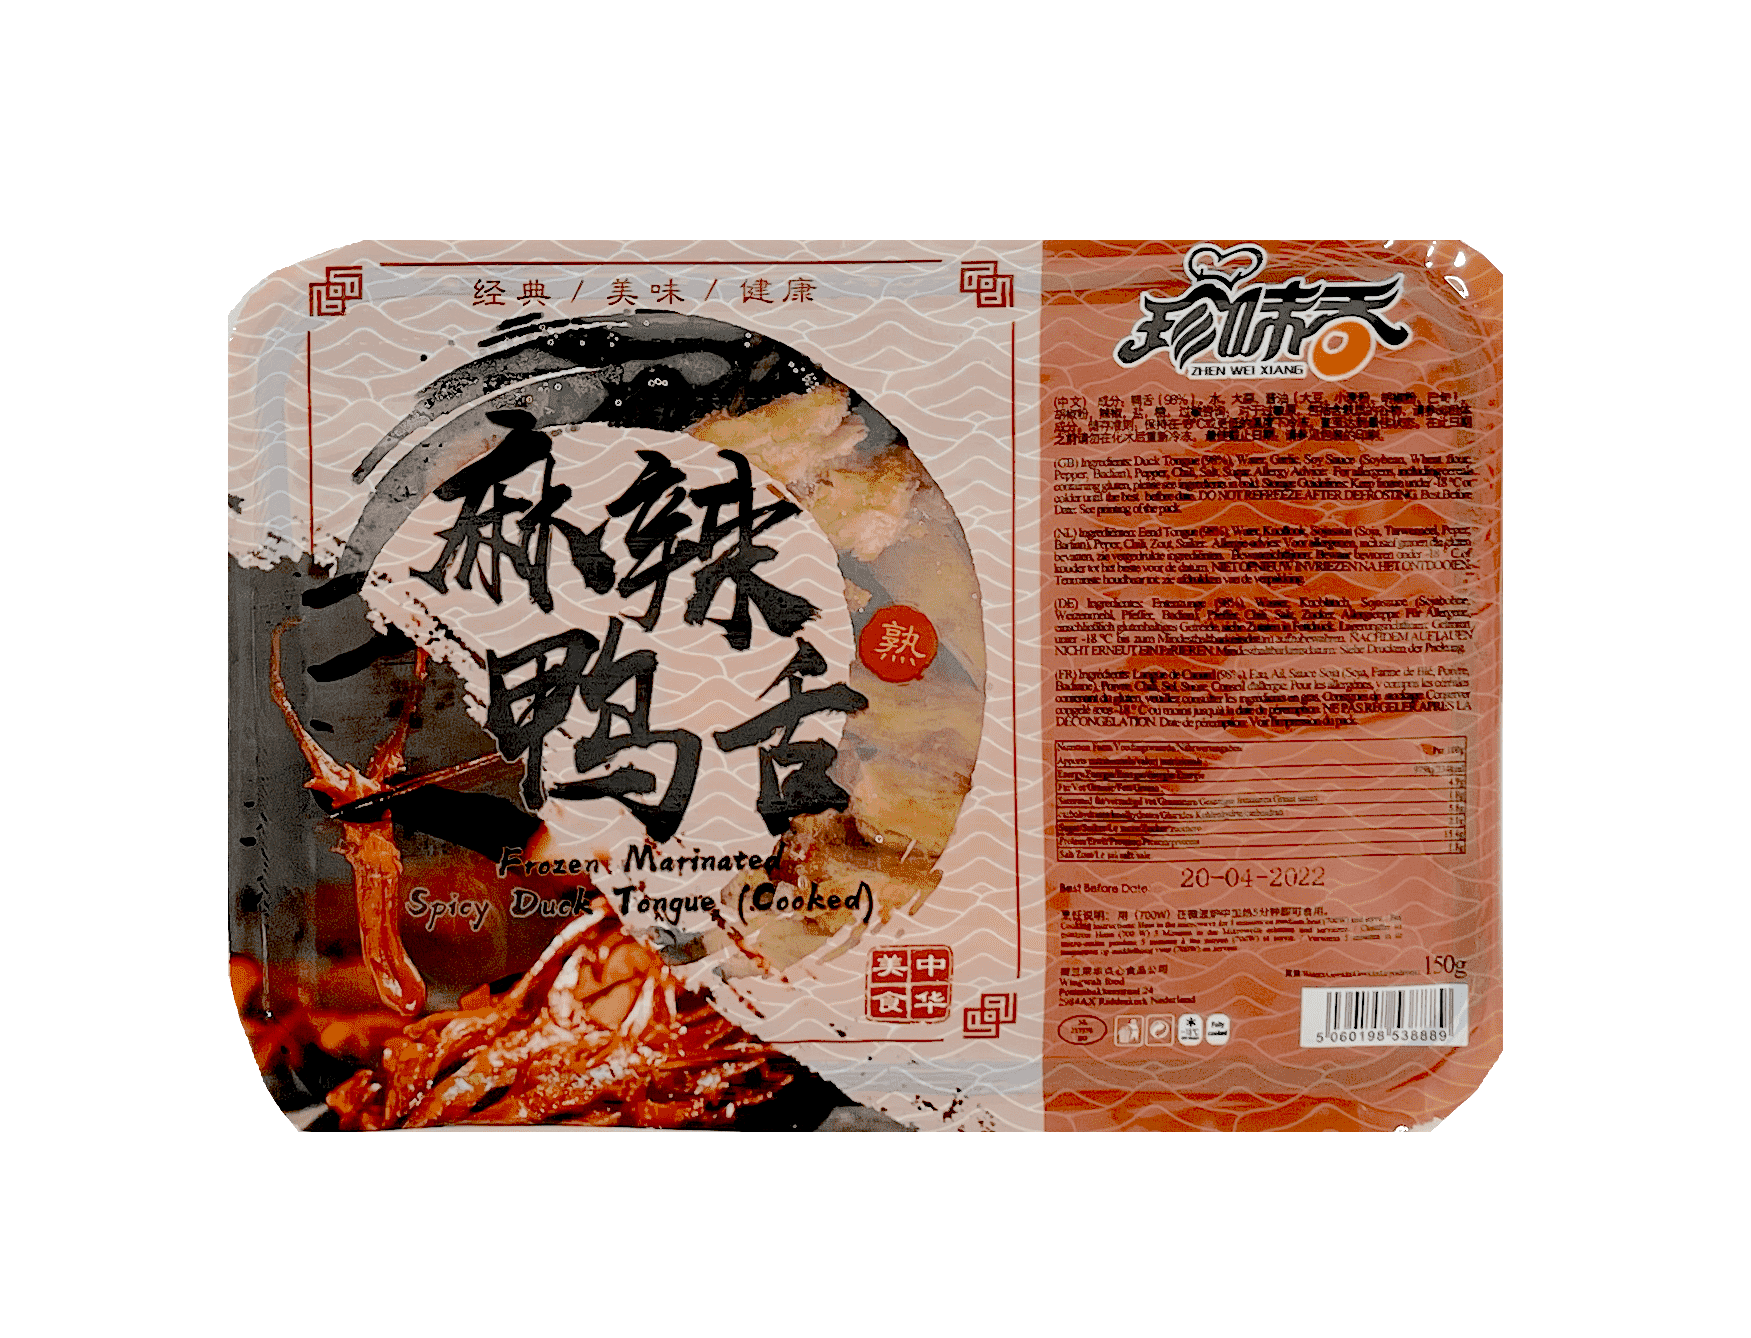 Marinated Spicy Duck Tongue (Cooked) Frozen 150g Zhen Wei Xian China